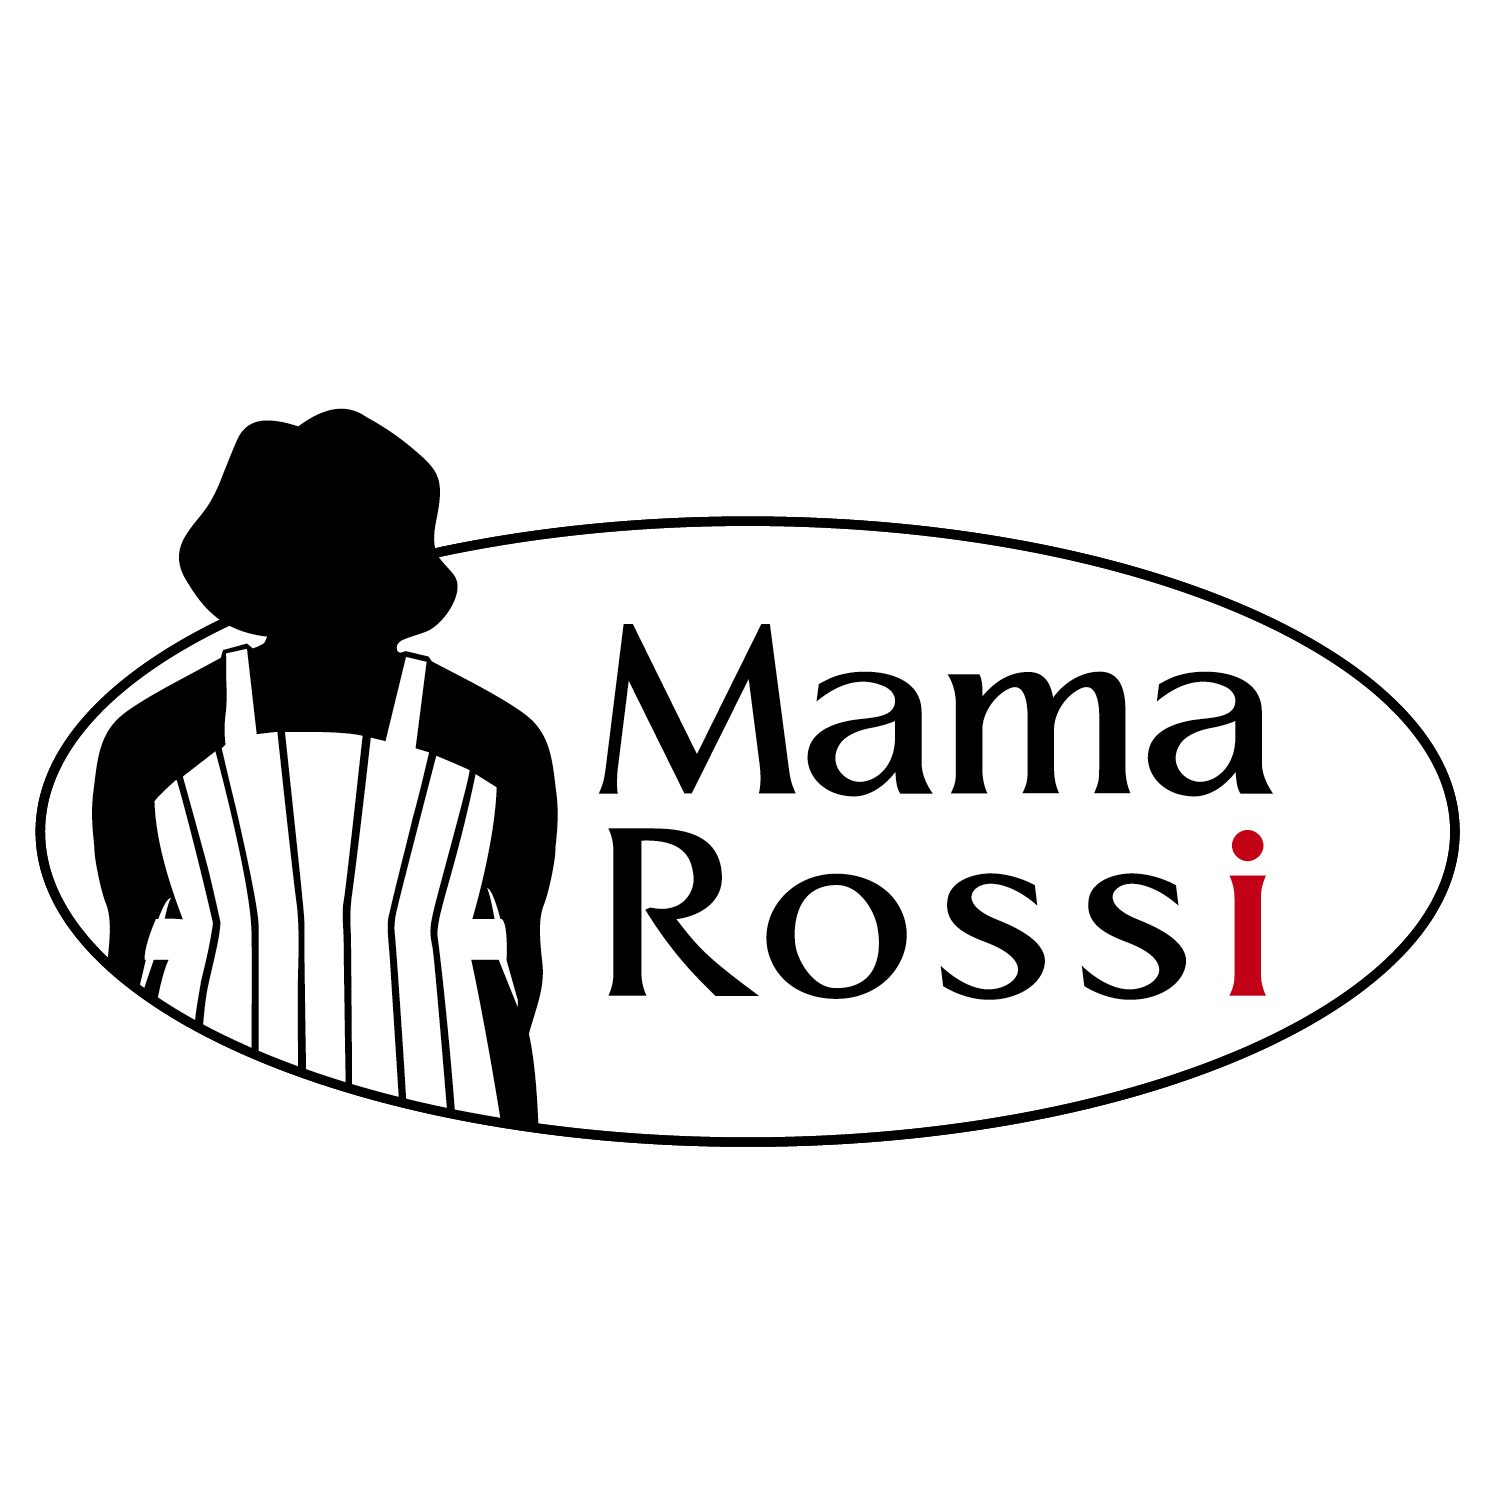 Mama Rossi